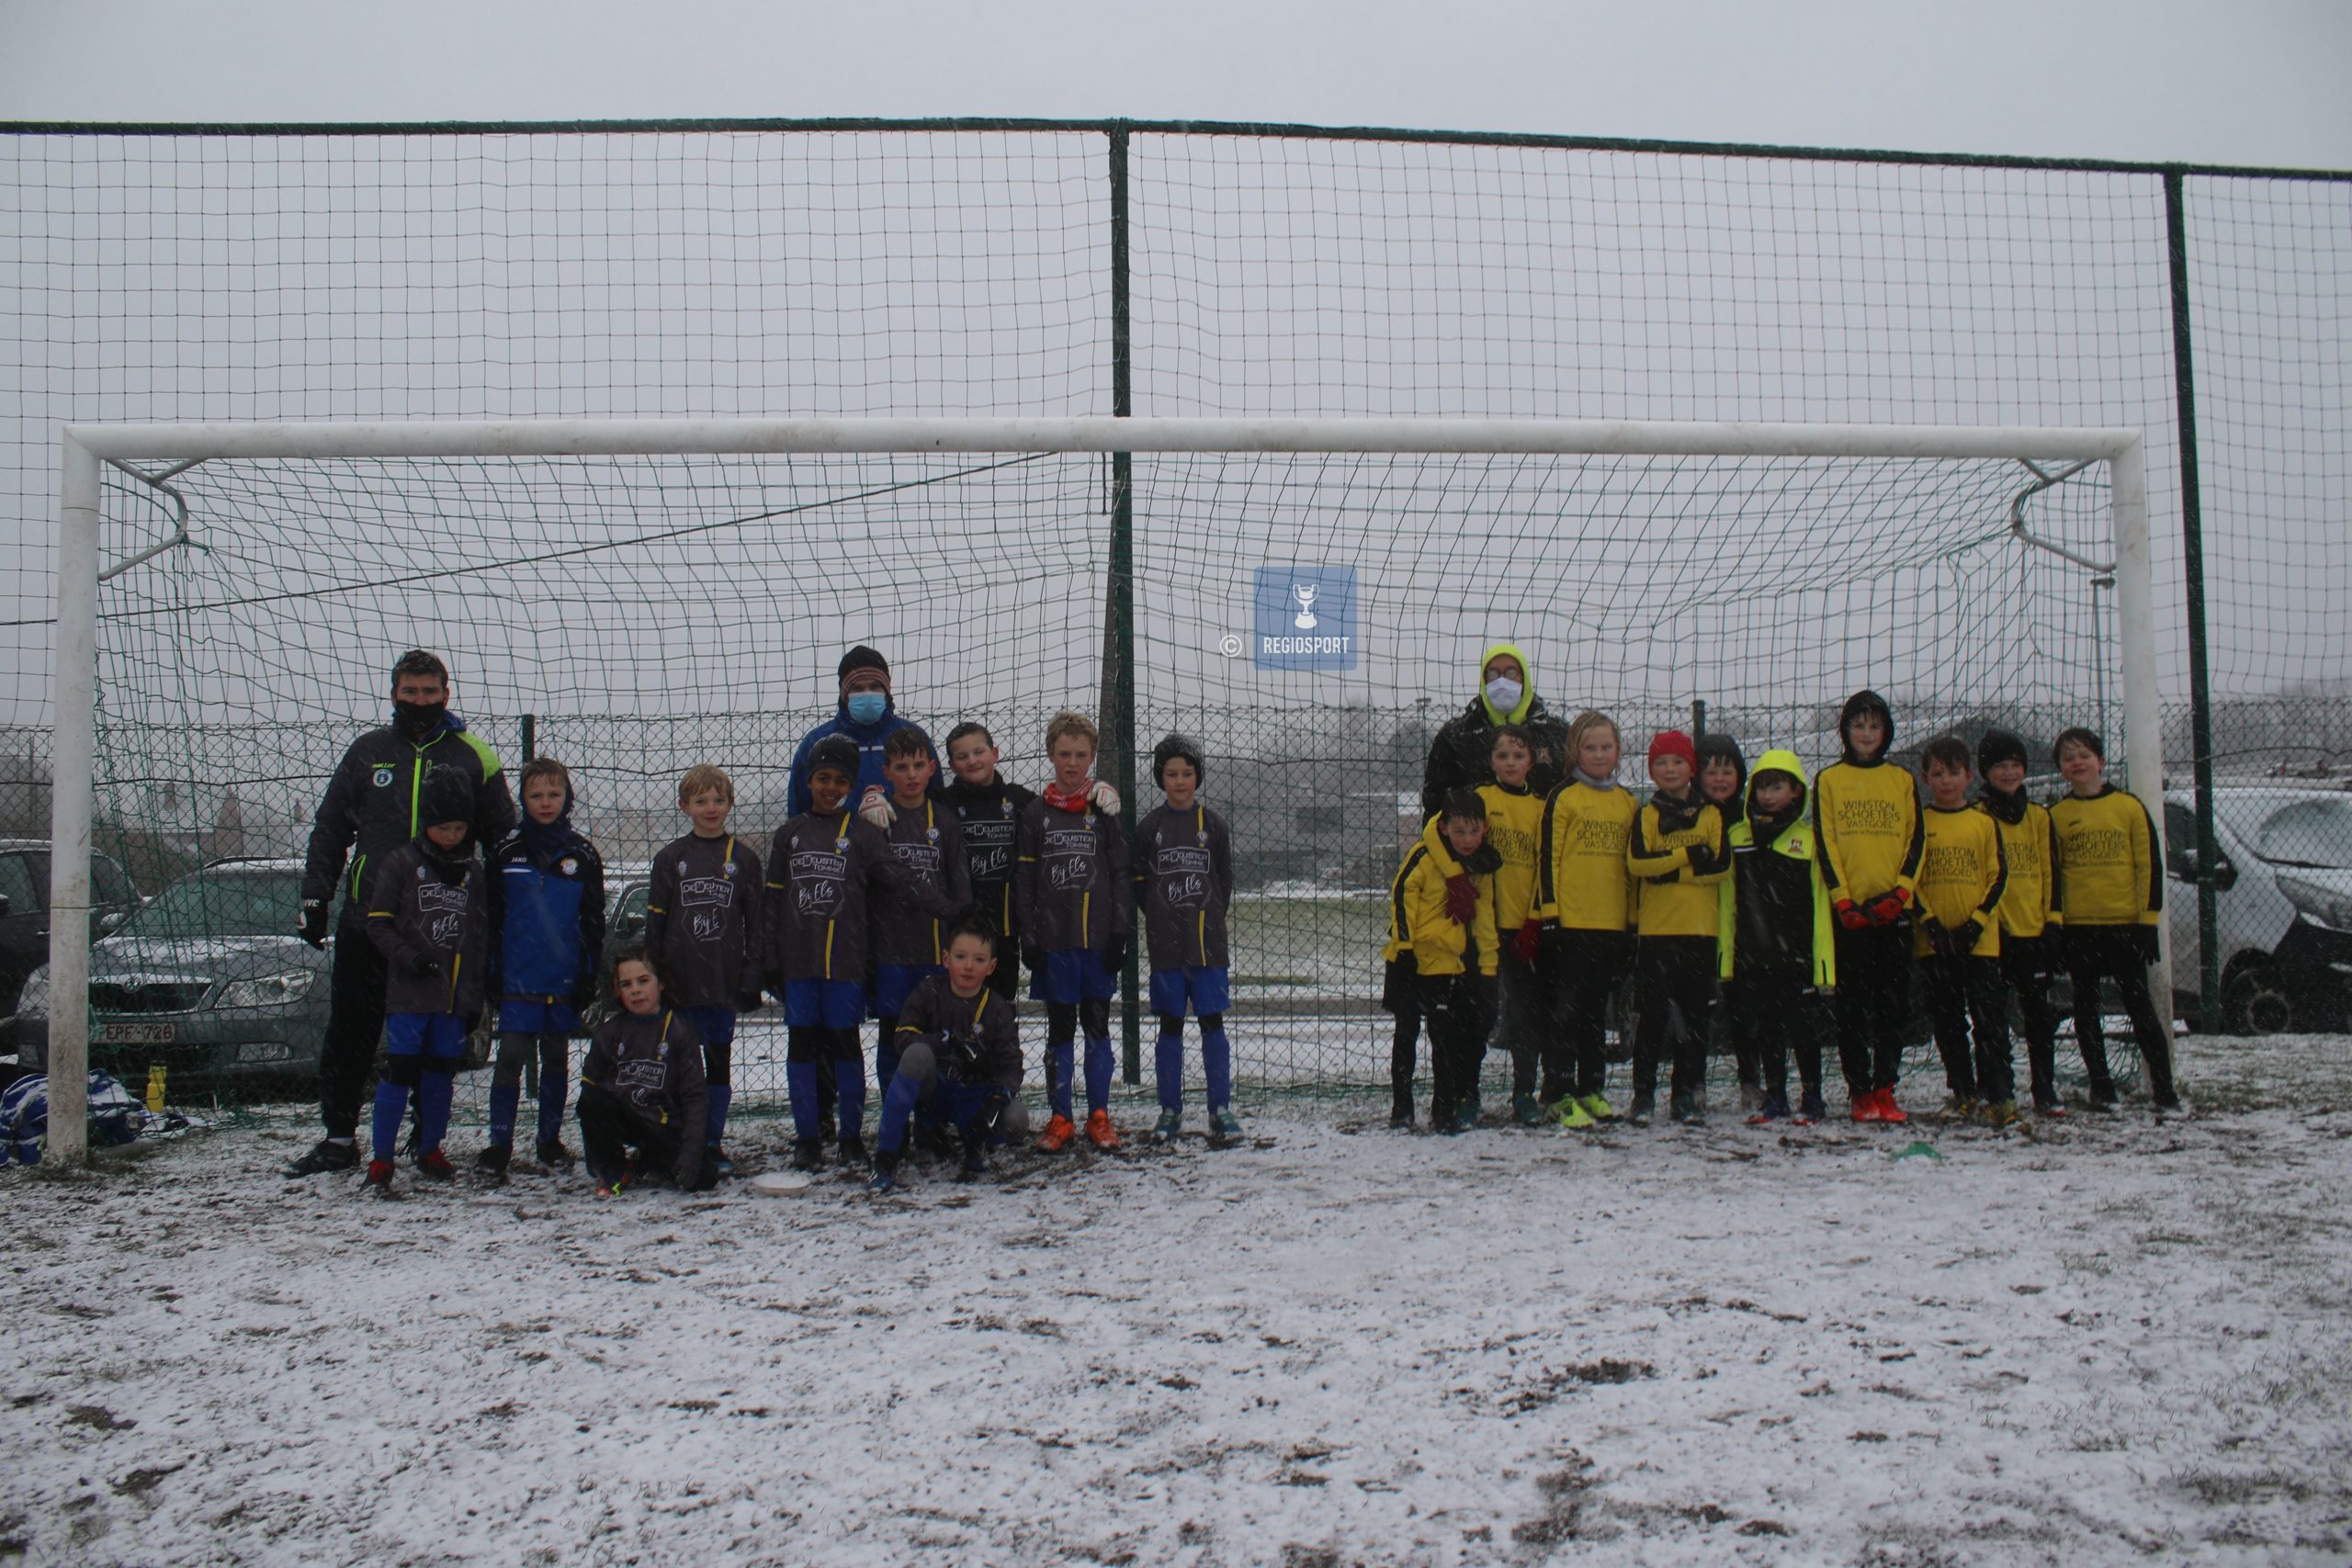 U10 SV Grasheide en NV Keerbergen spelen vriendschappelijk in de sneeuw